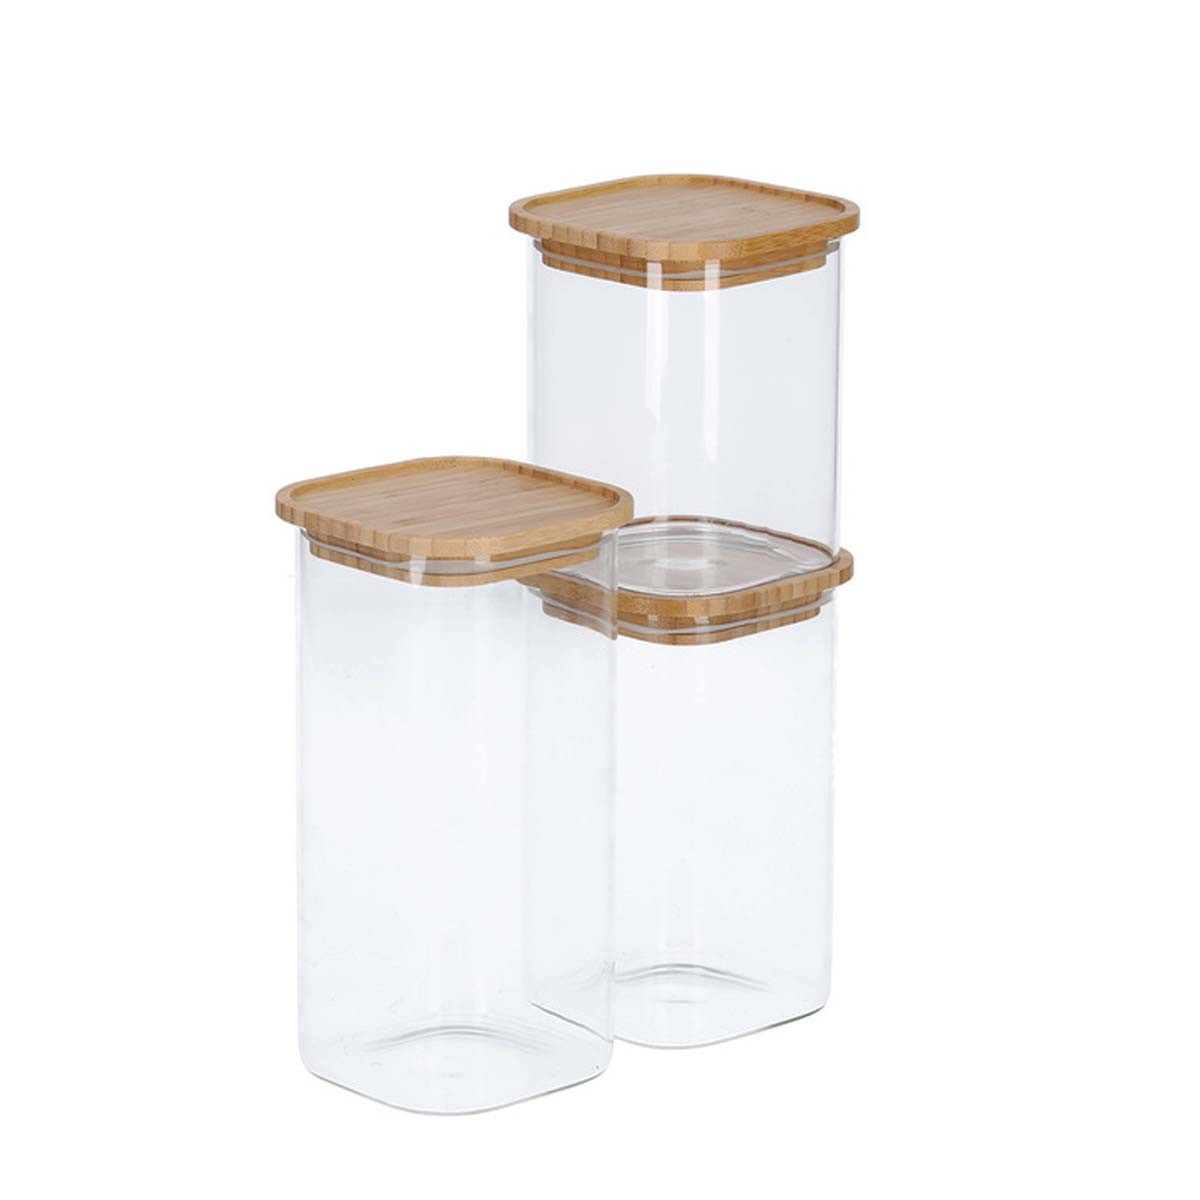 Set de 12 pots de conservation/bocaux en verre avec bouchon à vis 425 ml -  Pots de